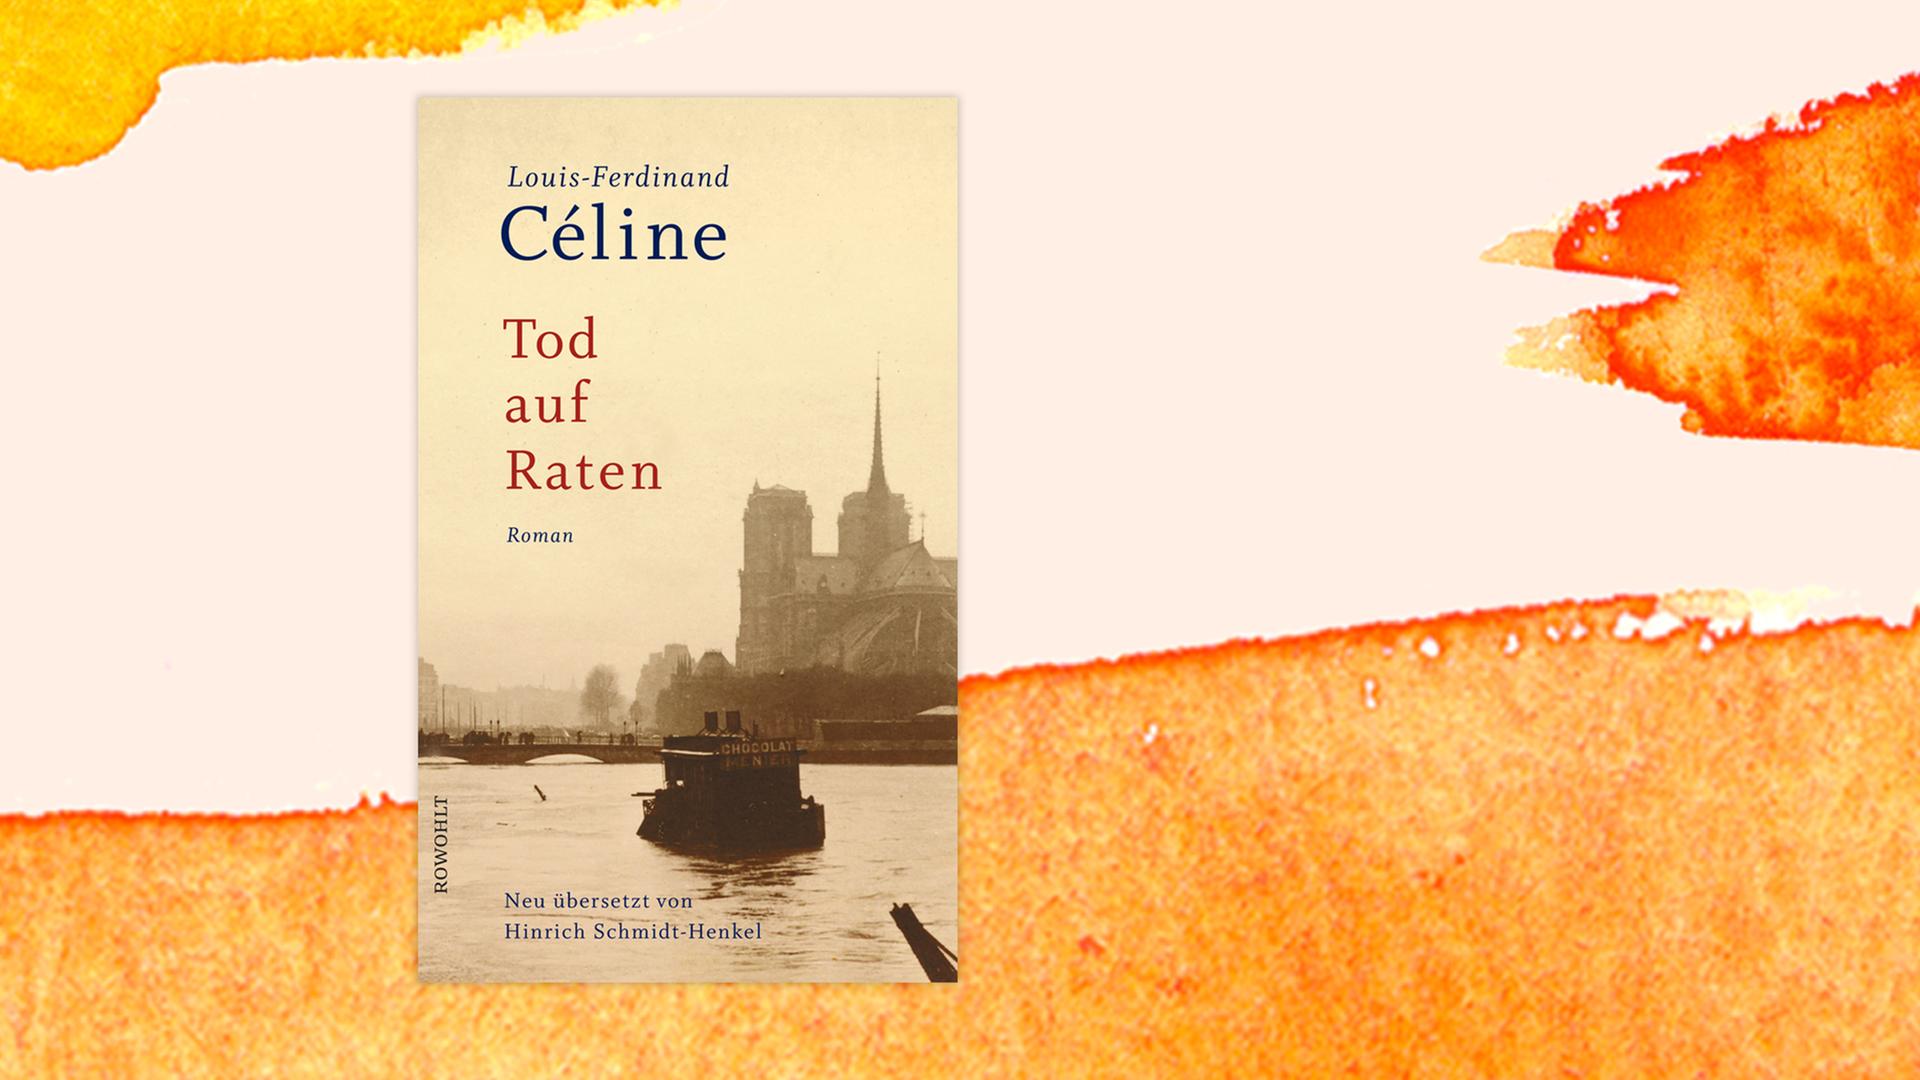 Das Buchcover "Tod auf Raten" von Louis-Ferdinand Céline ist vor einem grafischen Hintergrund zu sehen.